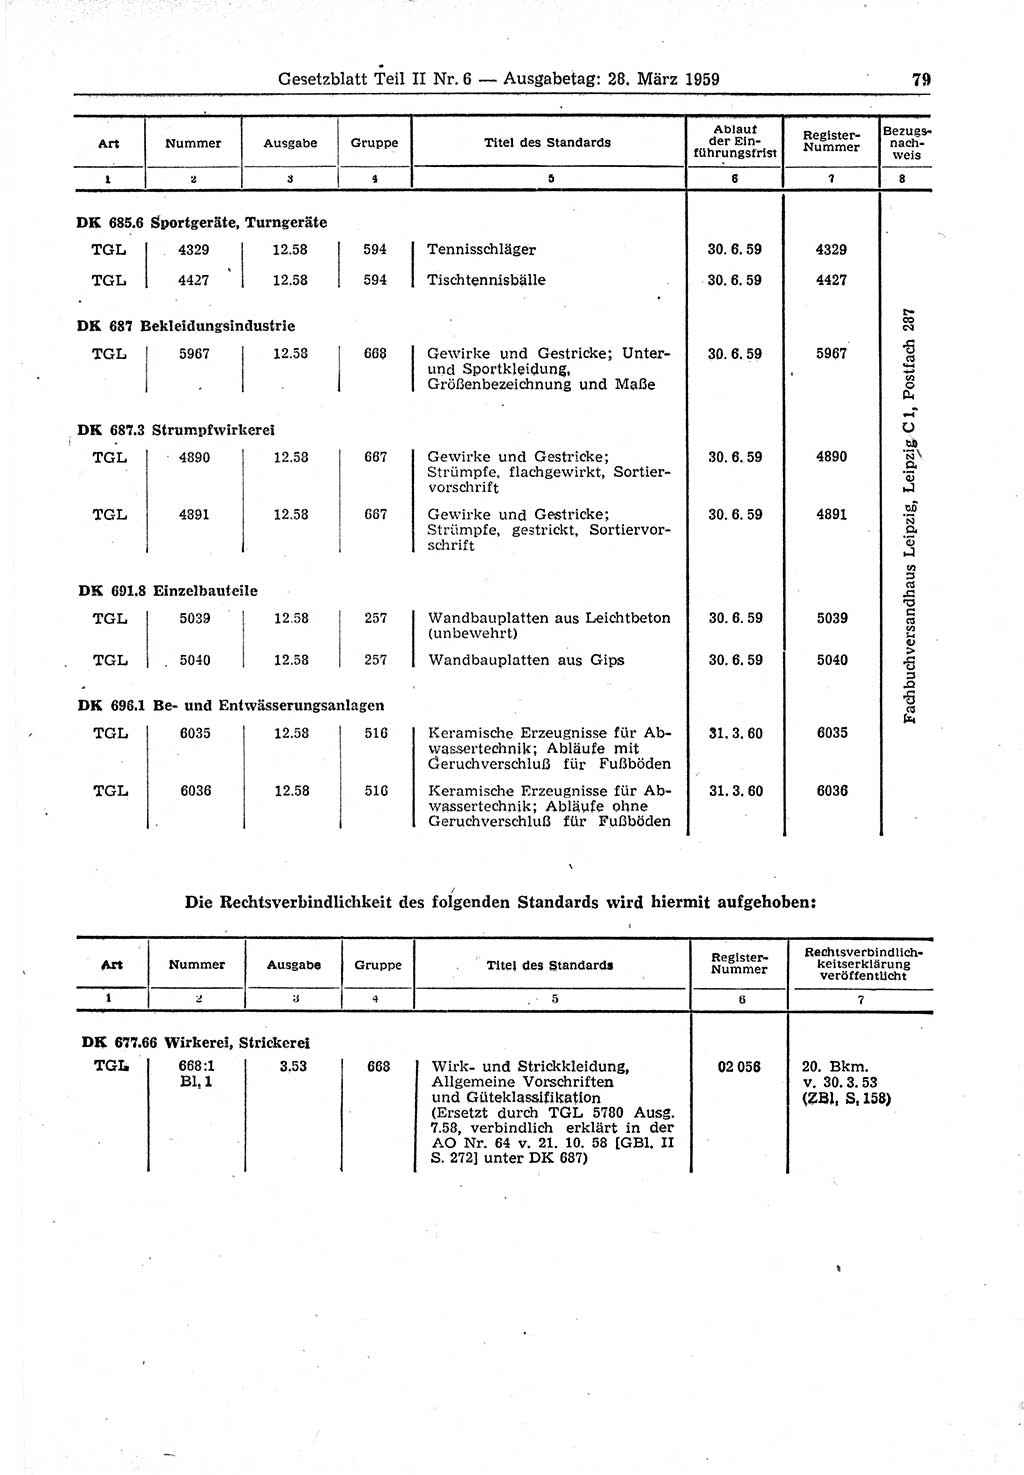 Gesetzblatt (GBl.) der Deutschen Demokratischen Republik (DDR) Teil ⅠⅠ 1959, Seite 79 (GBl. DDR ⅠⅠ 1959, S. 79)